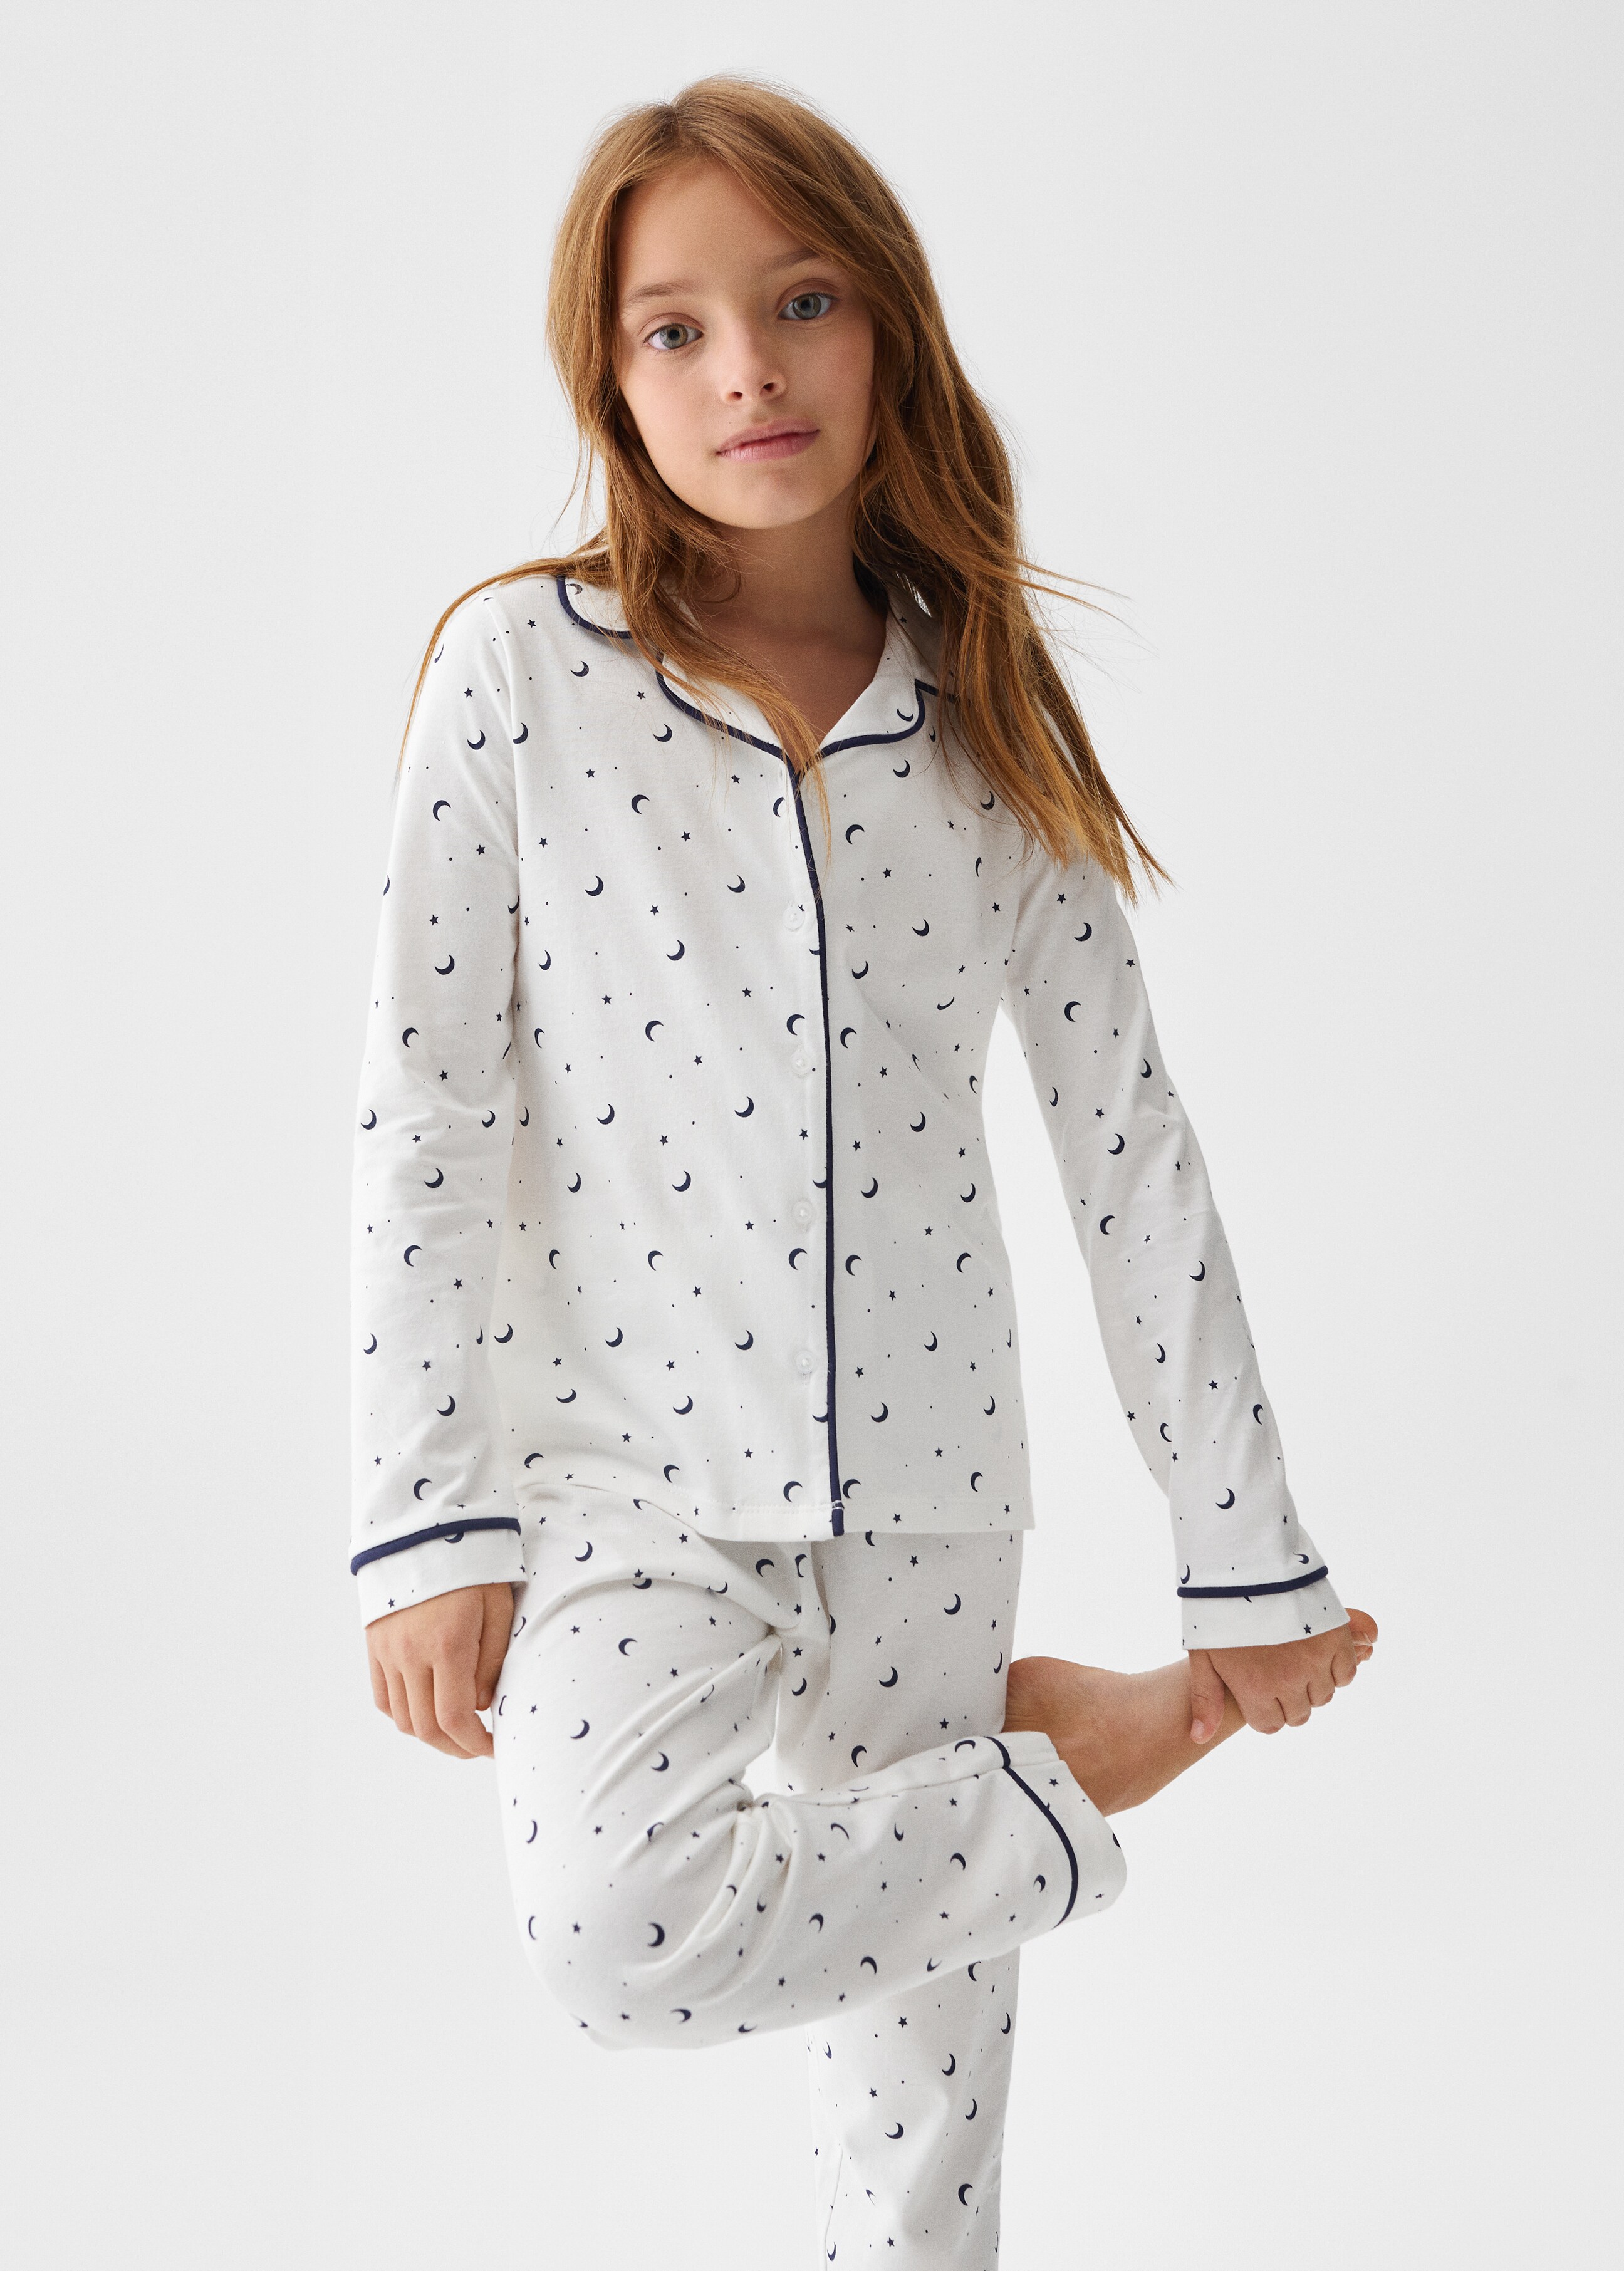 Printed cotton pyjamas - Medium plane